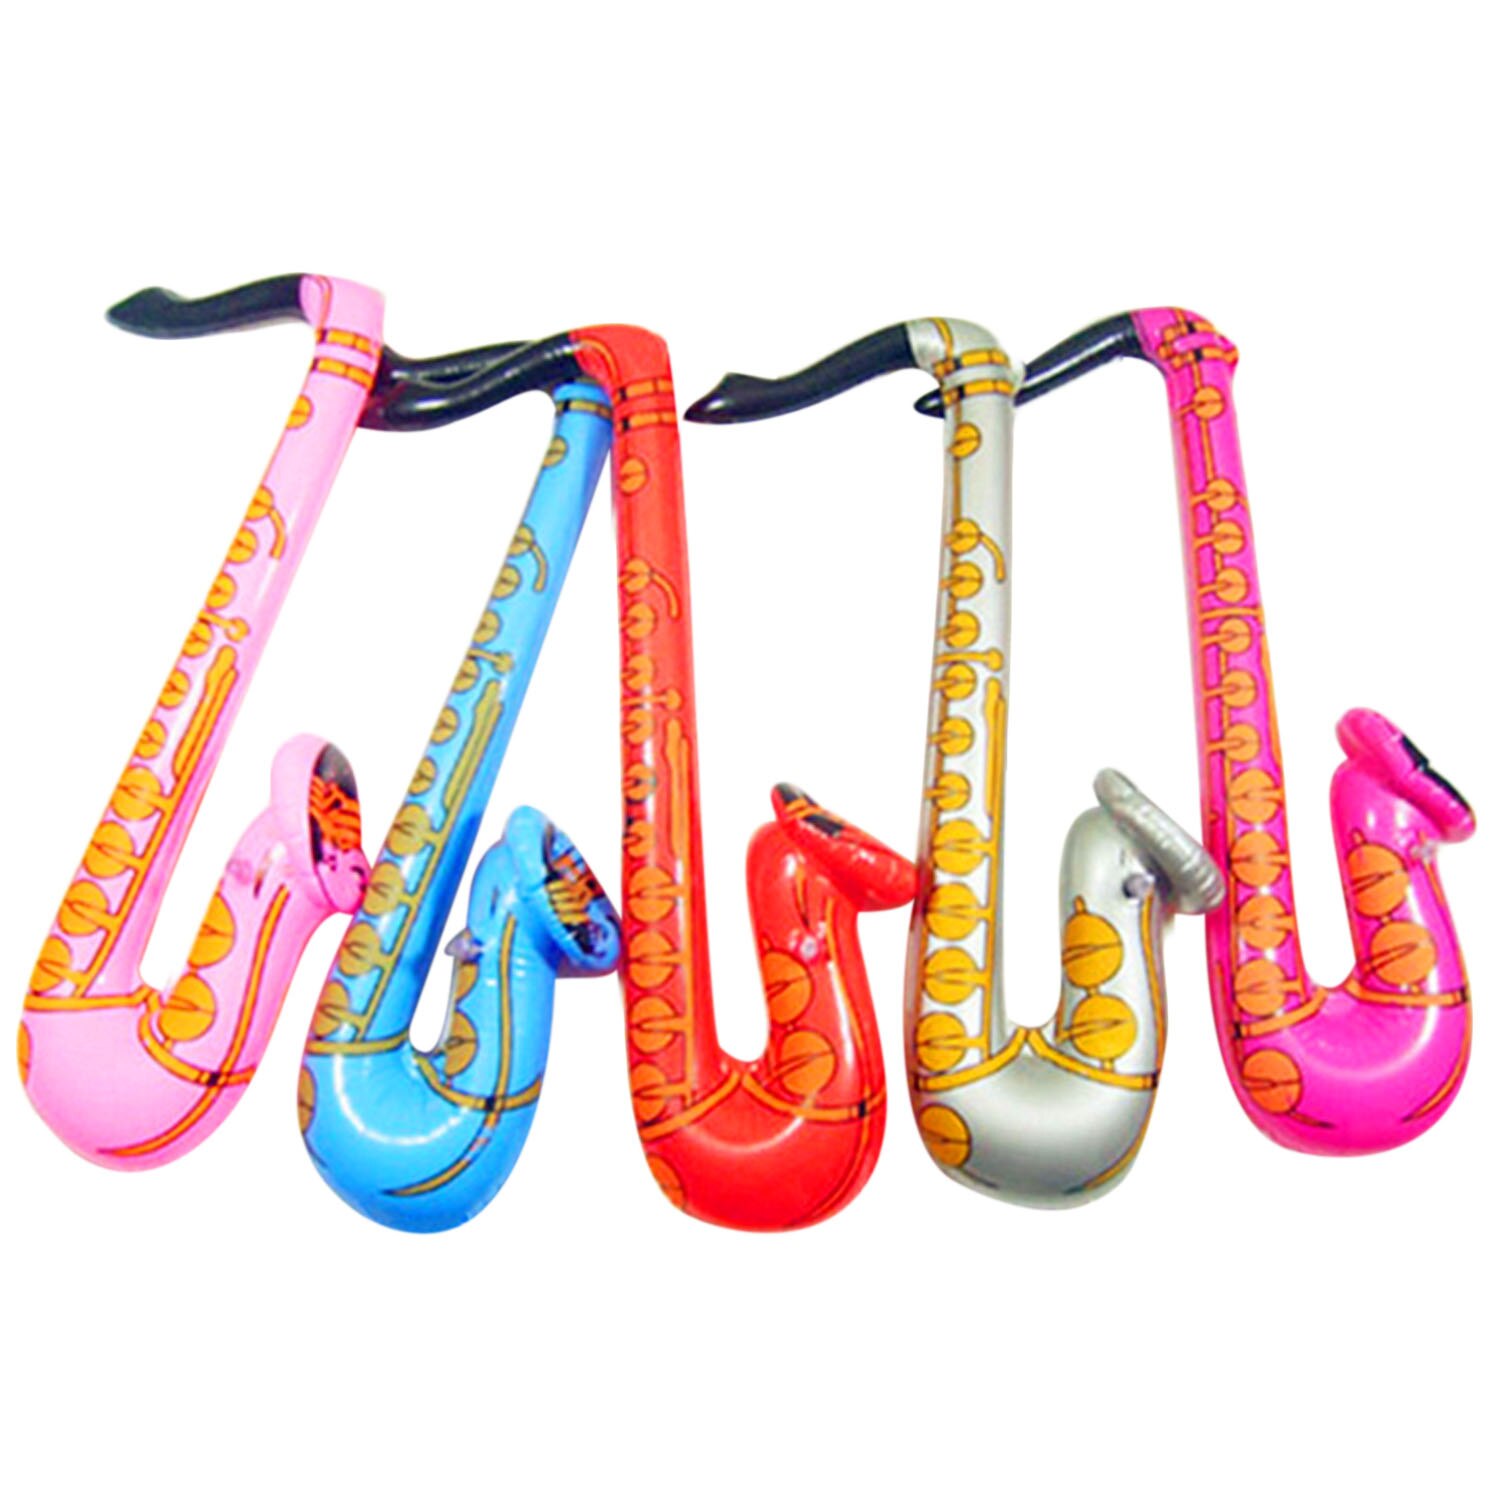 14Pcs Jumbo Opblaasbare Gitaar Saxofoon Microfoon Ballonnen Muziekinstrumenten Accessoires Voor Zwembad Feestartikelen